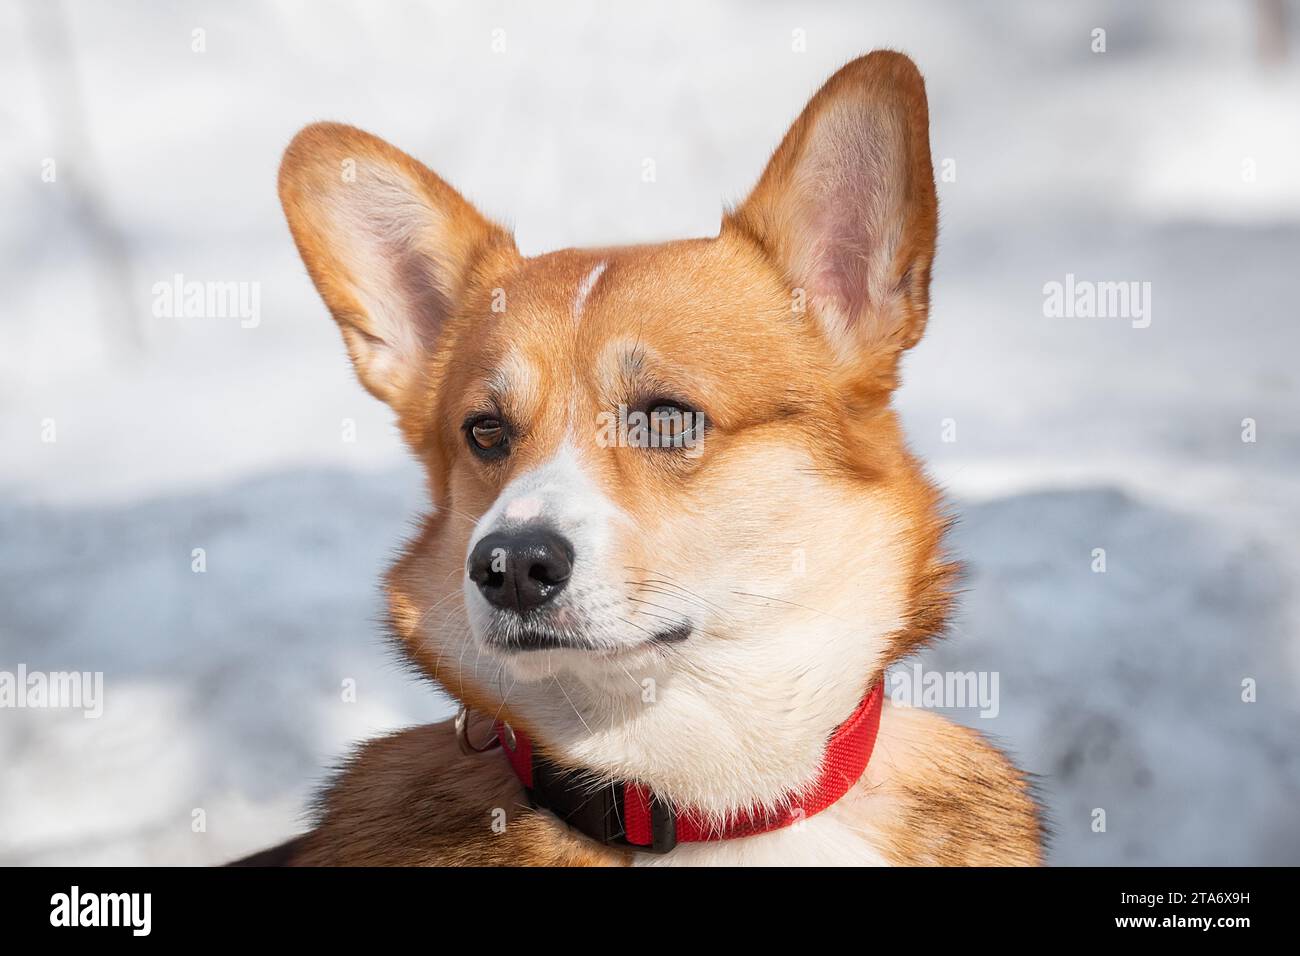 Corgi rossi gallesi cane pembroke in piedi in montagna all'aperto in inverno Foto Stock